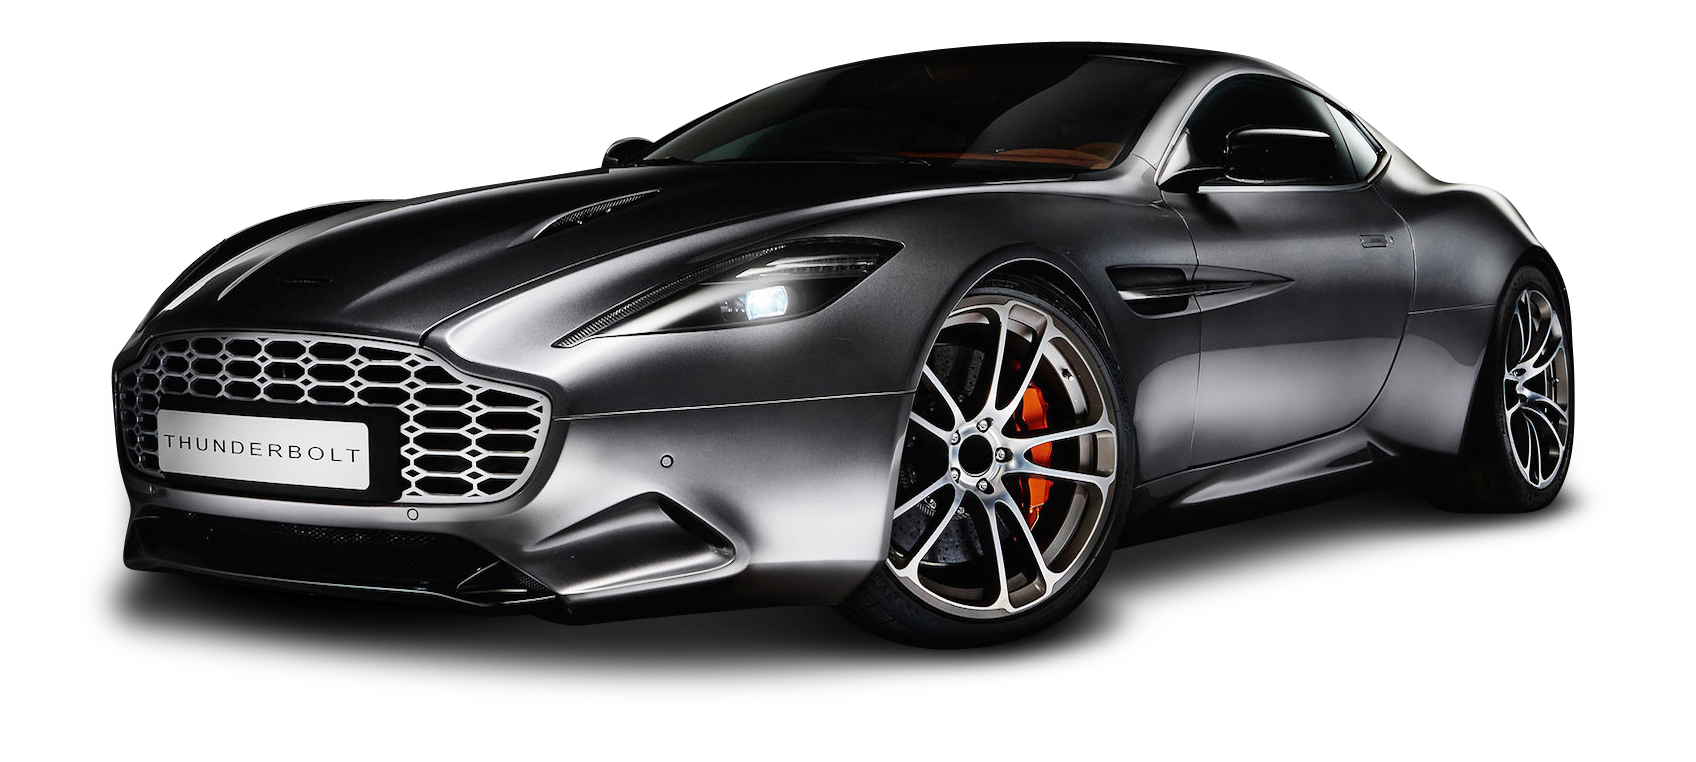 Aston Martin Vanquish Thunderbolt Car